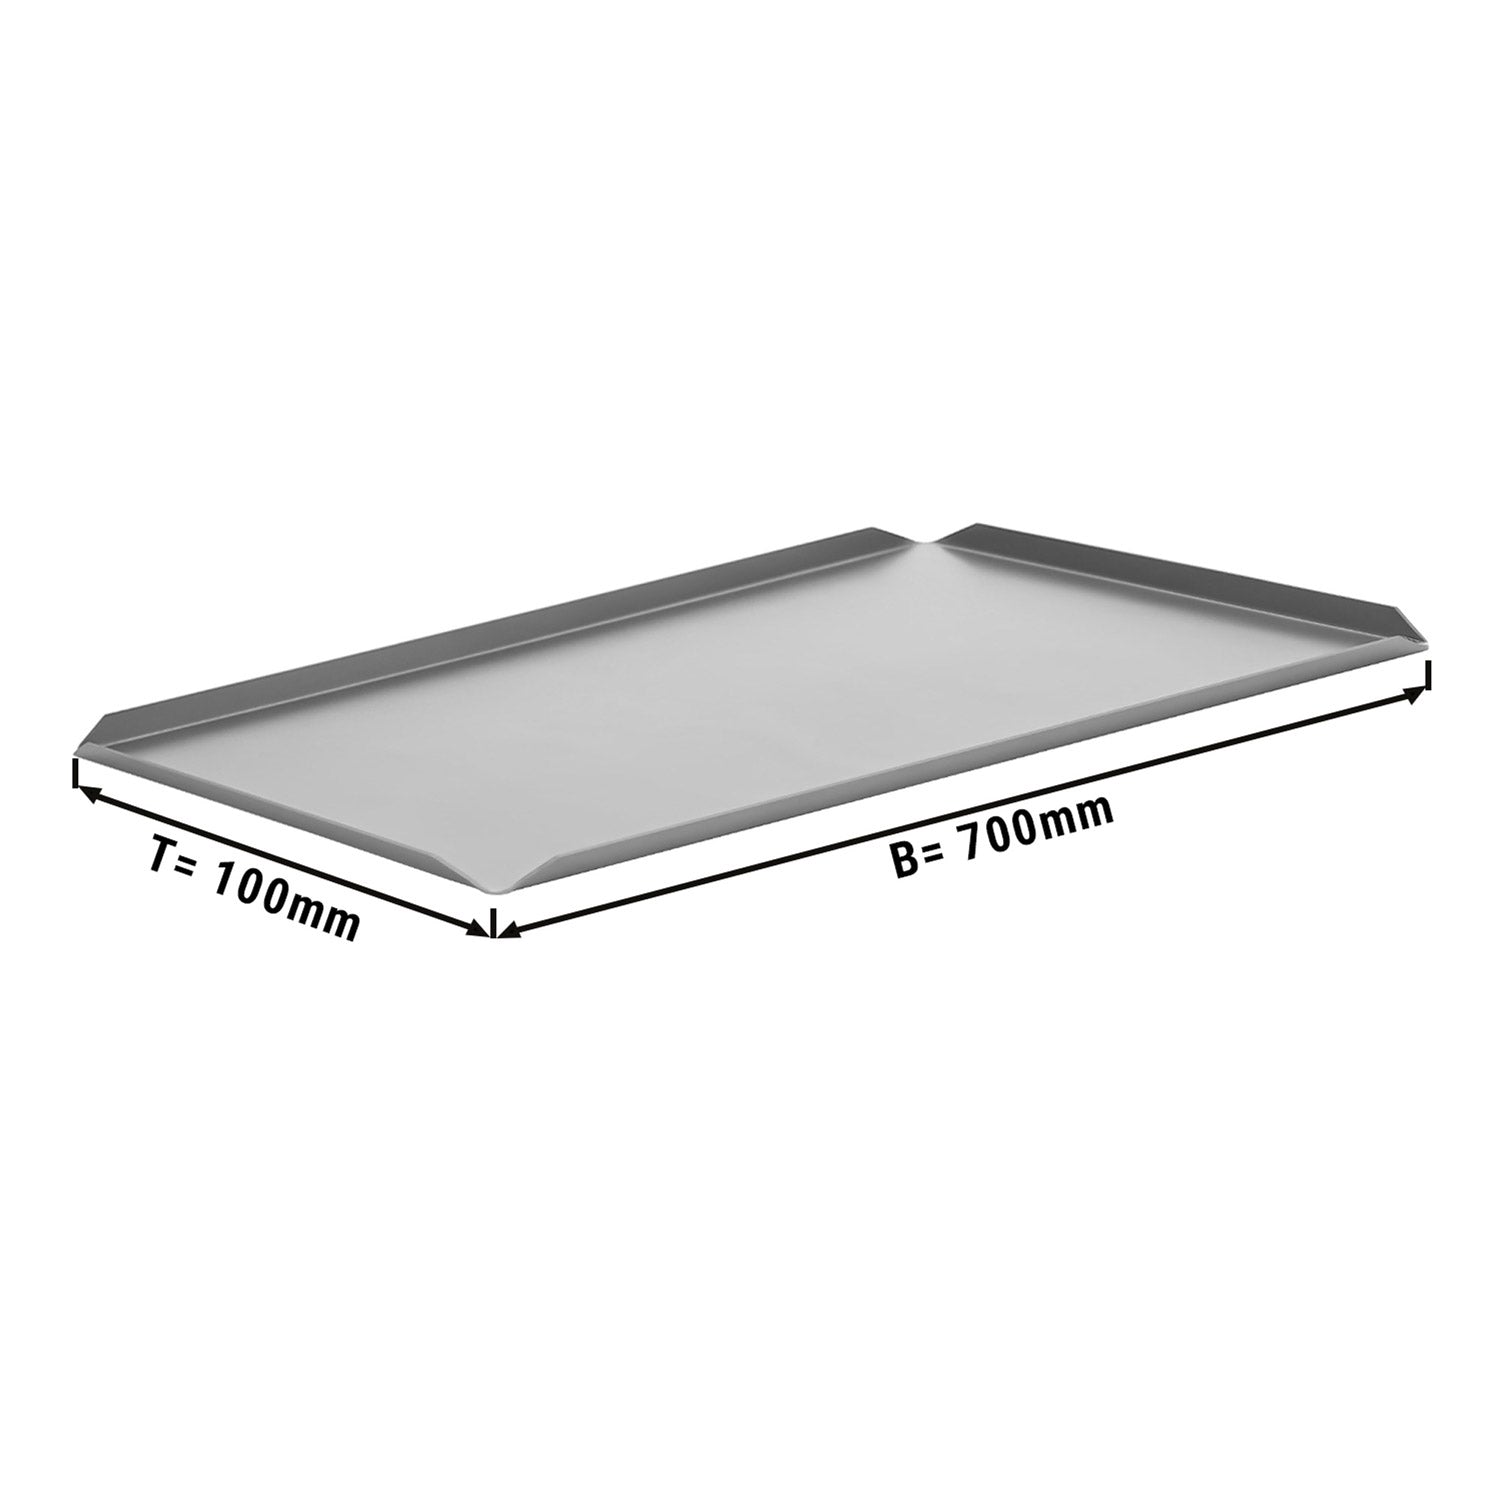 (5 stk) Konfekt og presentasjonsplate laget av aluminium - 700 x 100 x 10 mm - Sølv